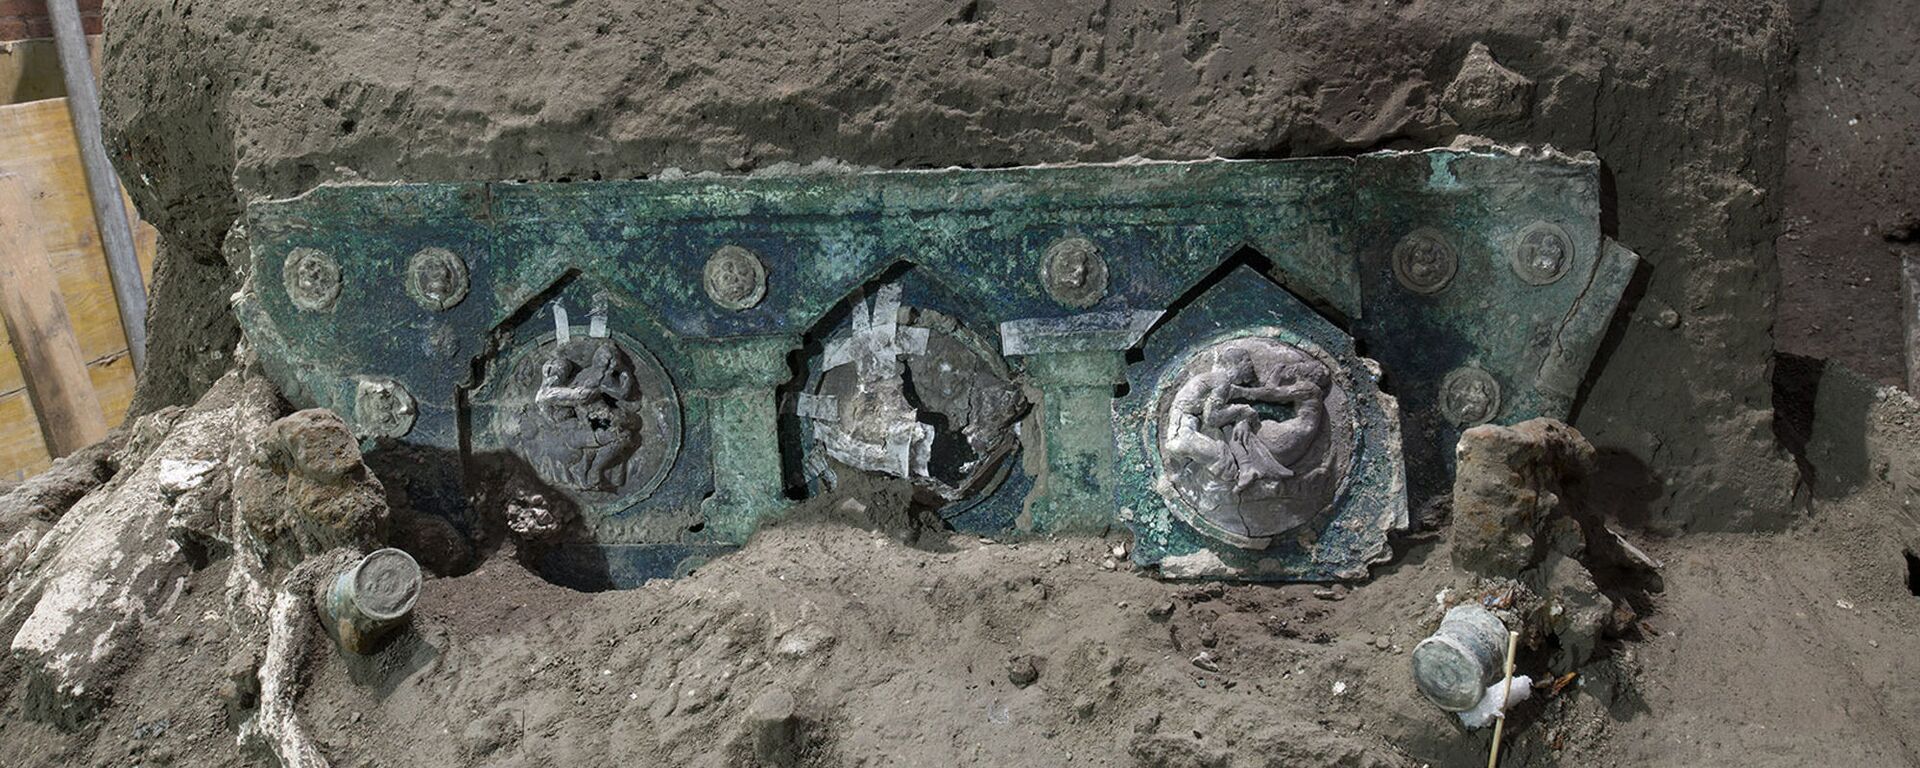 Luksuzna starorimska kočija nađena na arheološkom nalazištu u Pompeji - Sputnik Srbija, 1920, 01.03.2021